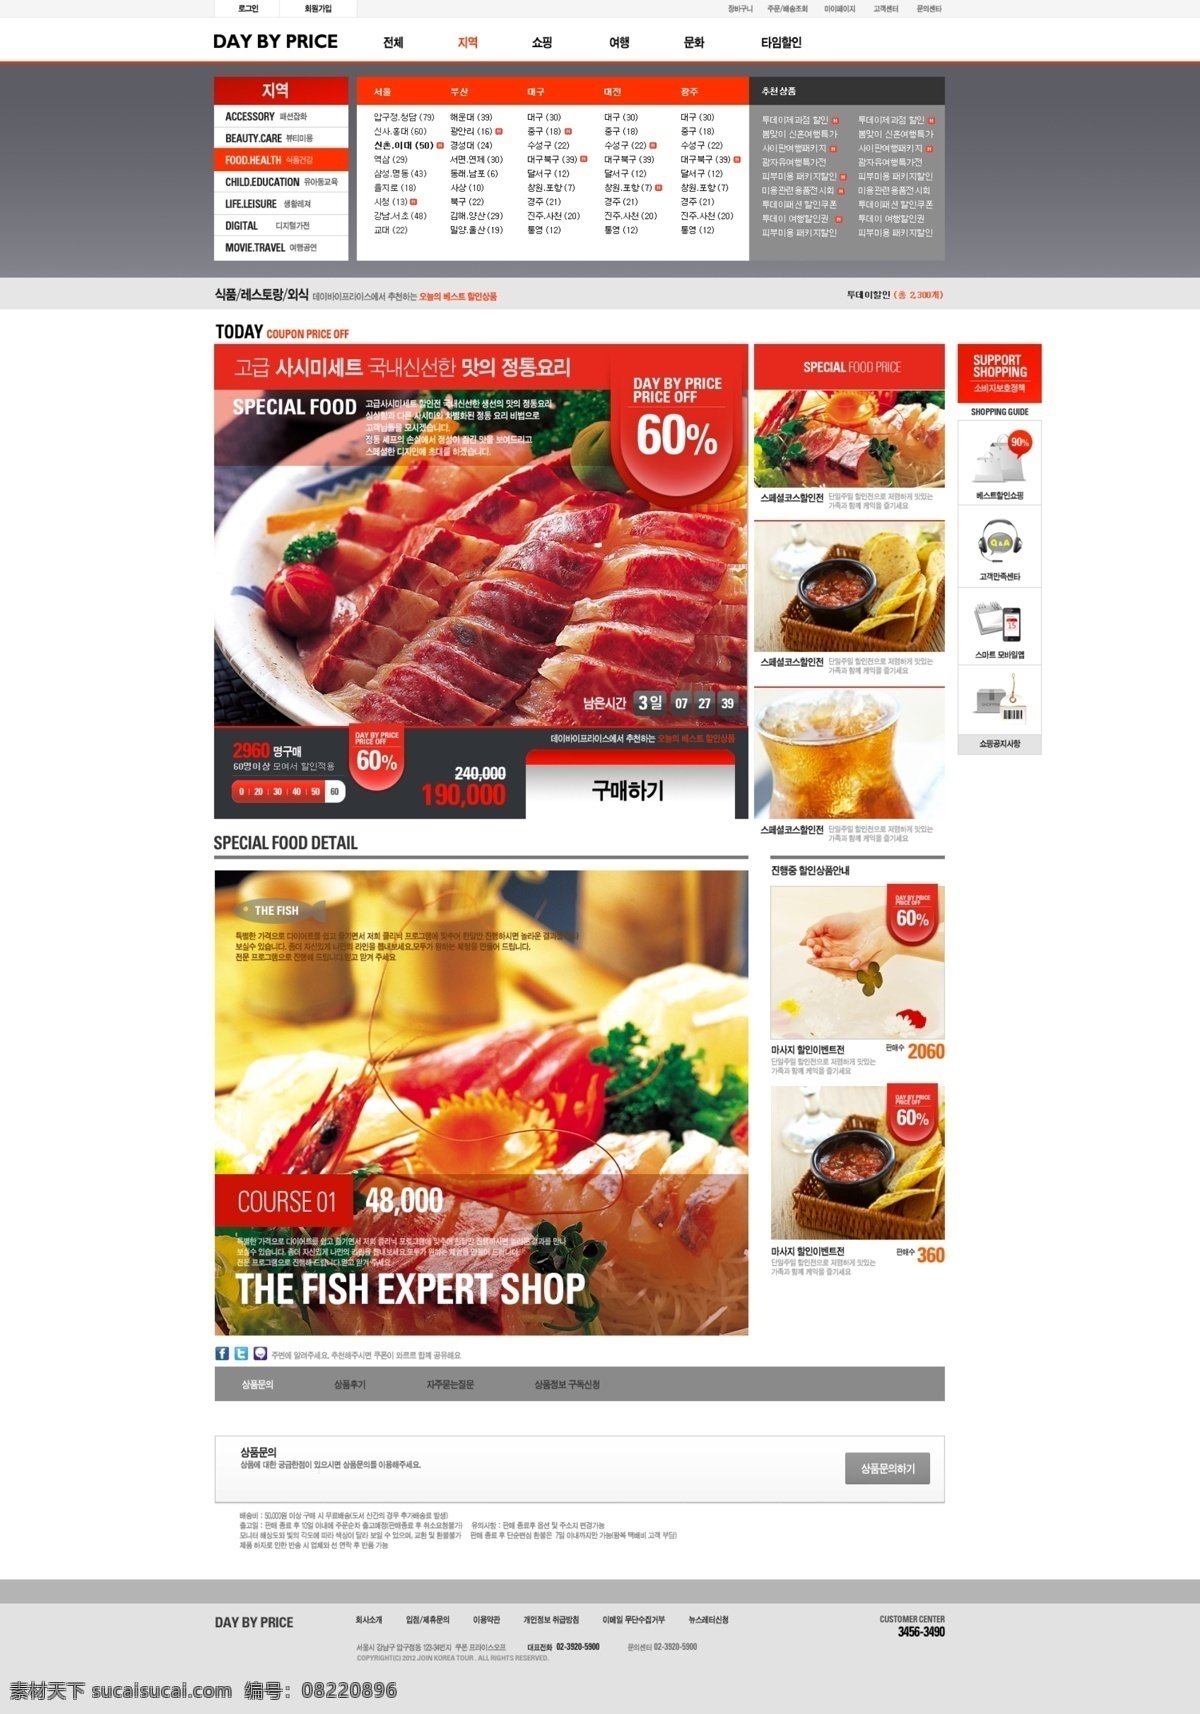 美食 展示 网页模板 网页界面模板 网页素材 网页设计 白色